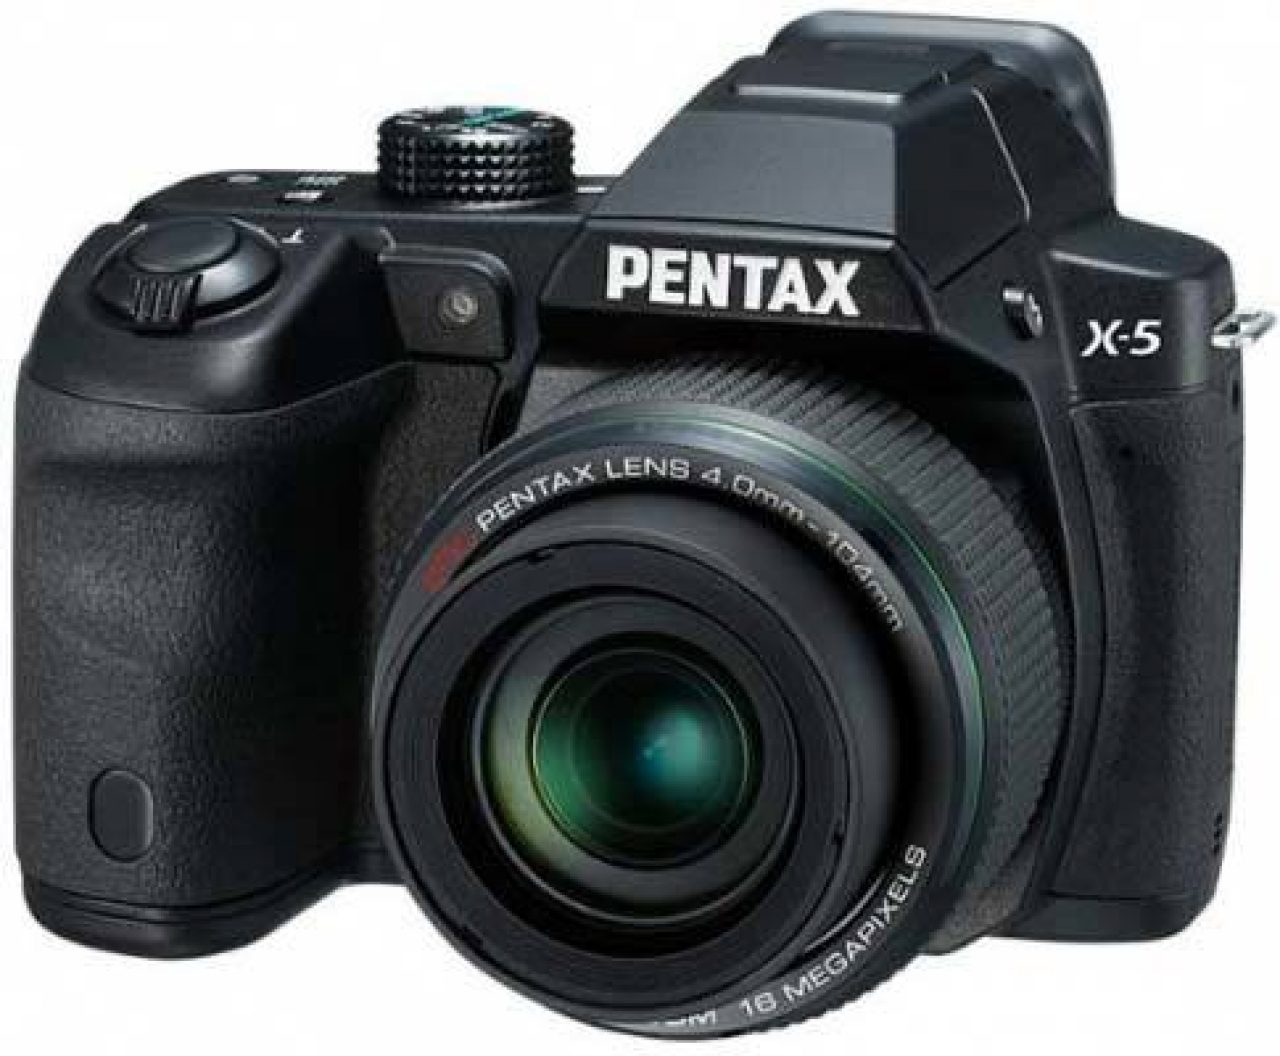 NEW LCD Display Screen for PENTAX X-5 X5 Digital Camera Repair Part 